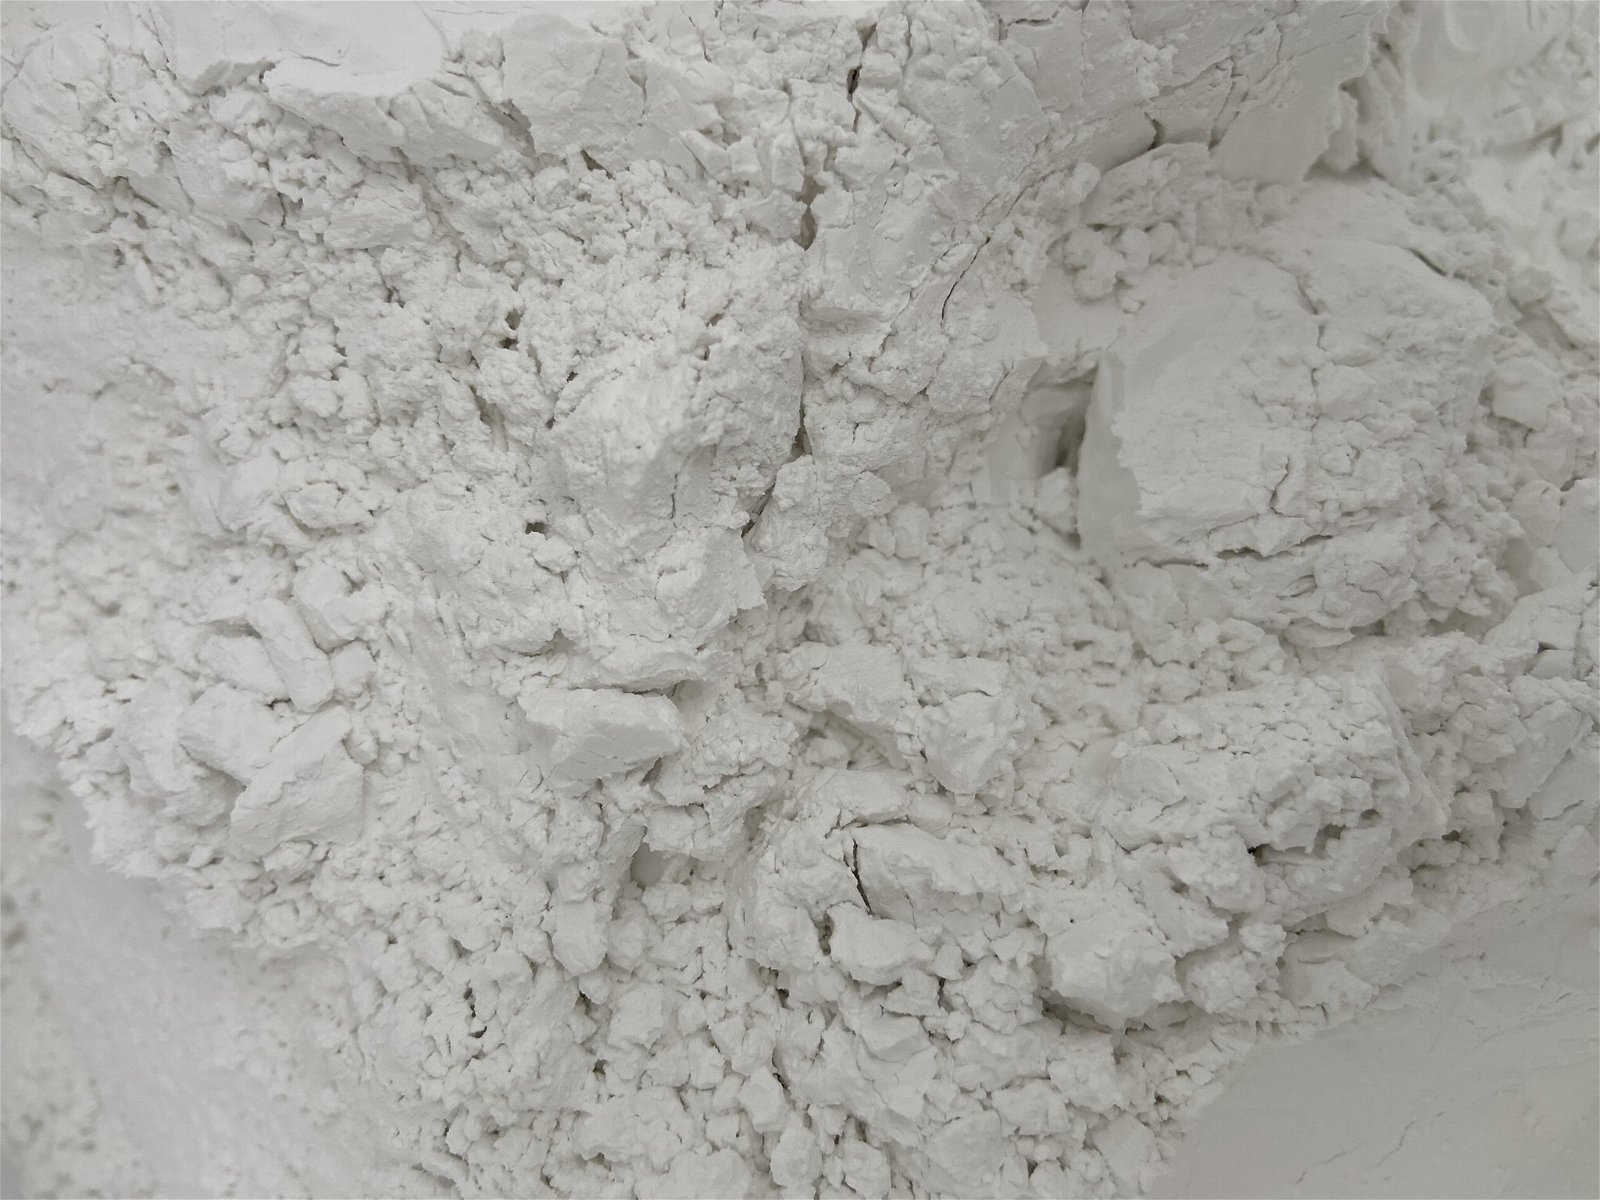  white fused alumina abrasive AL2O3 powder F1200